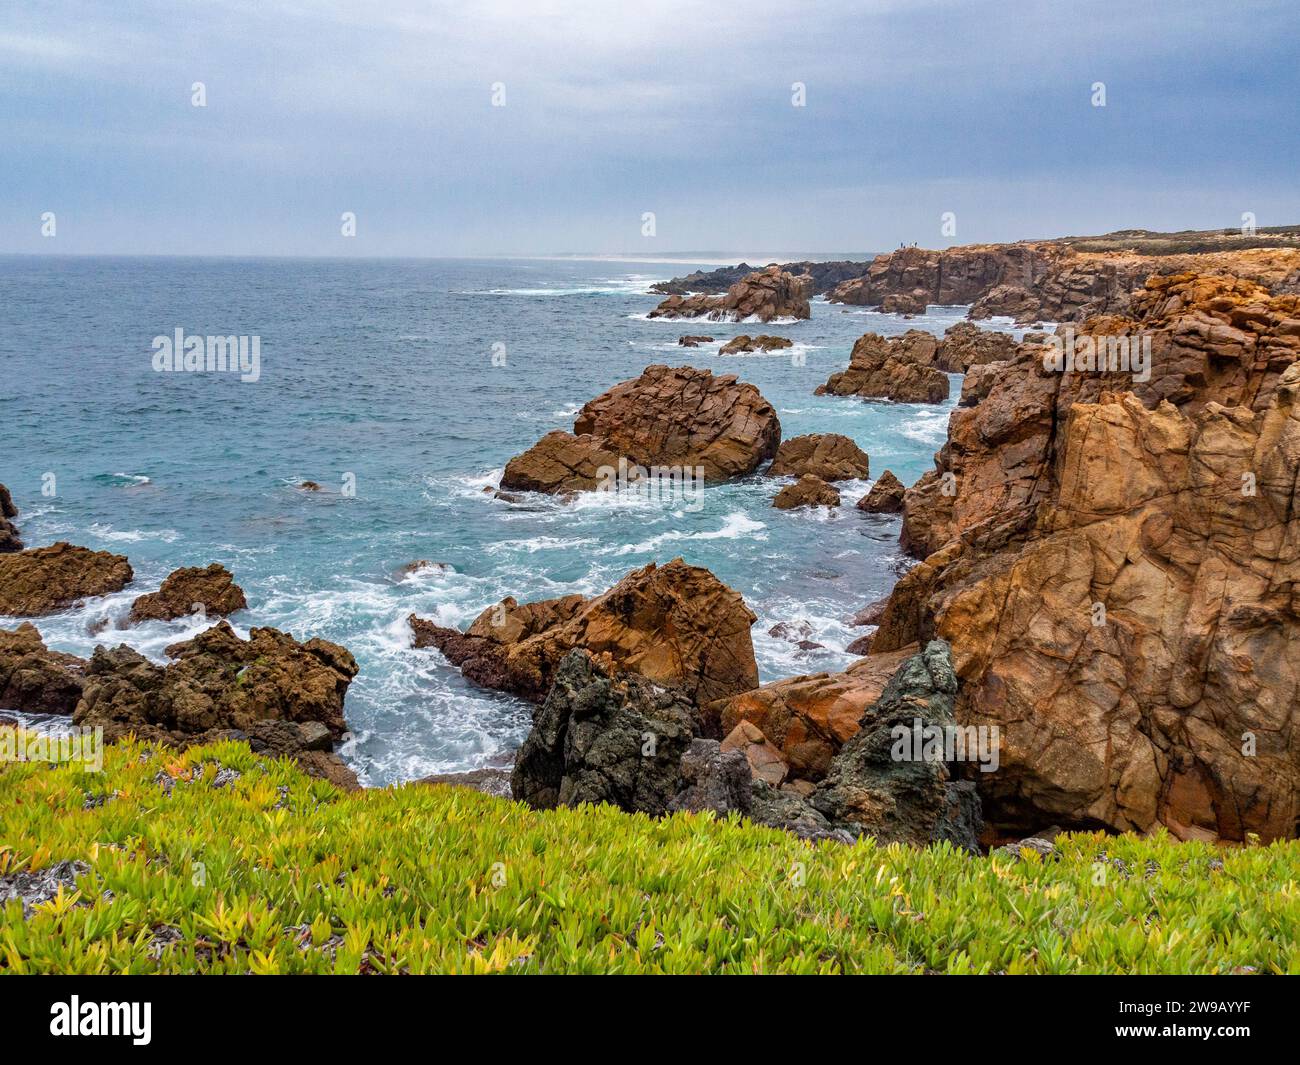 La costa rocciosa dell'Oceano Atlantico nella regione di Costa Azul in Portogallo Foto Stock